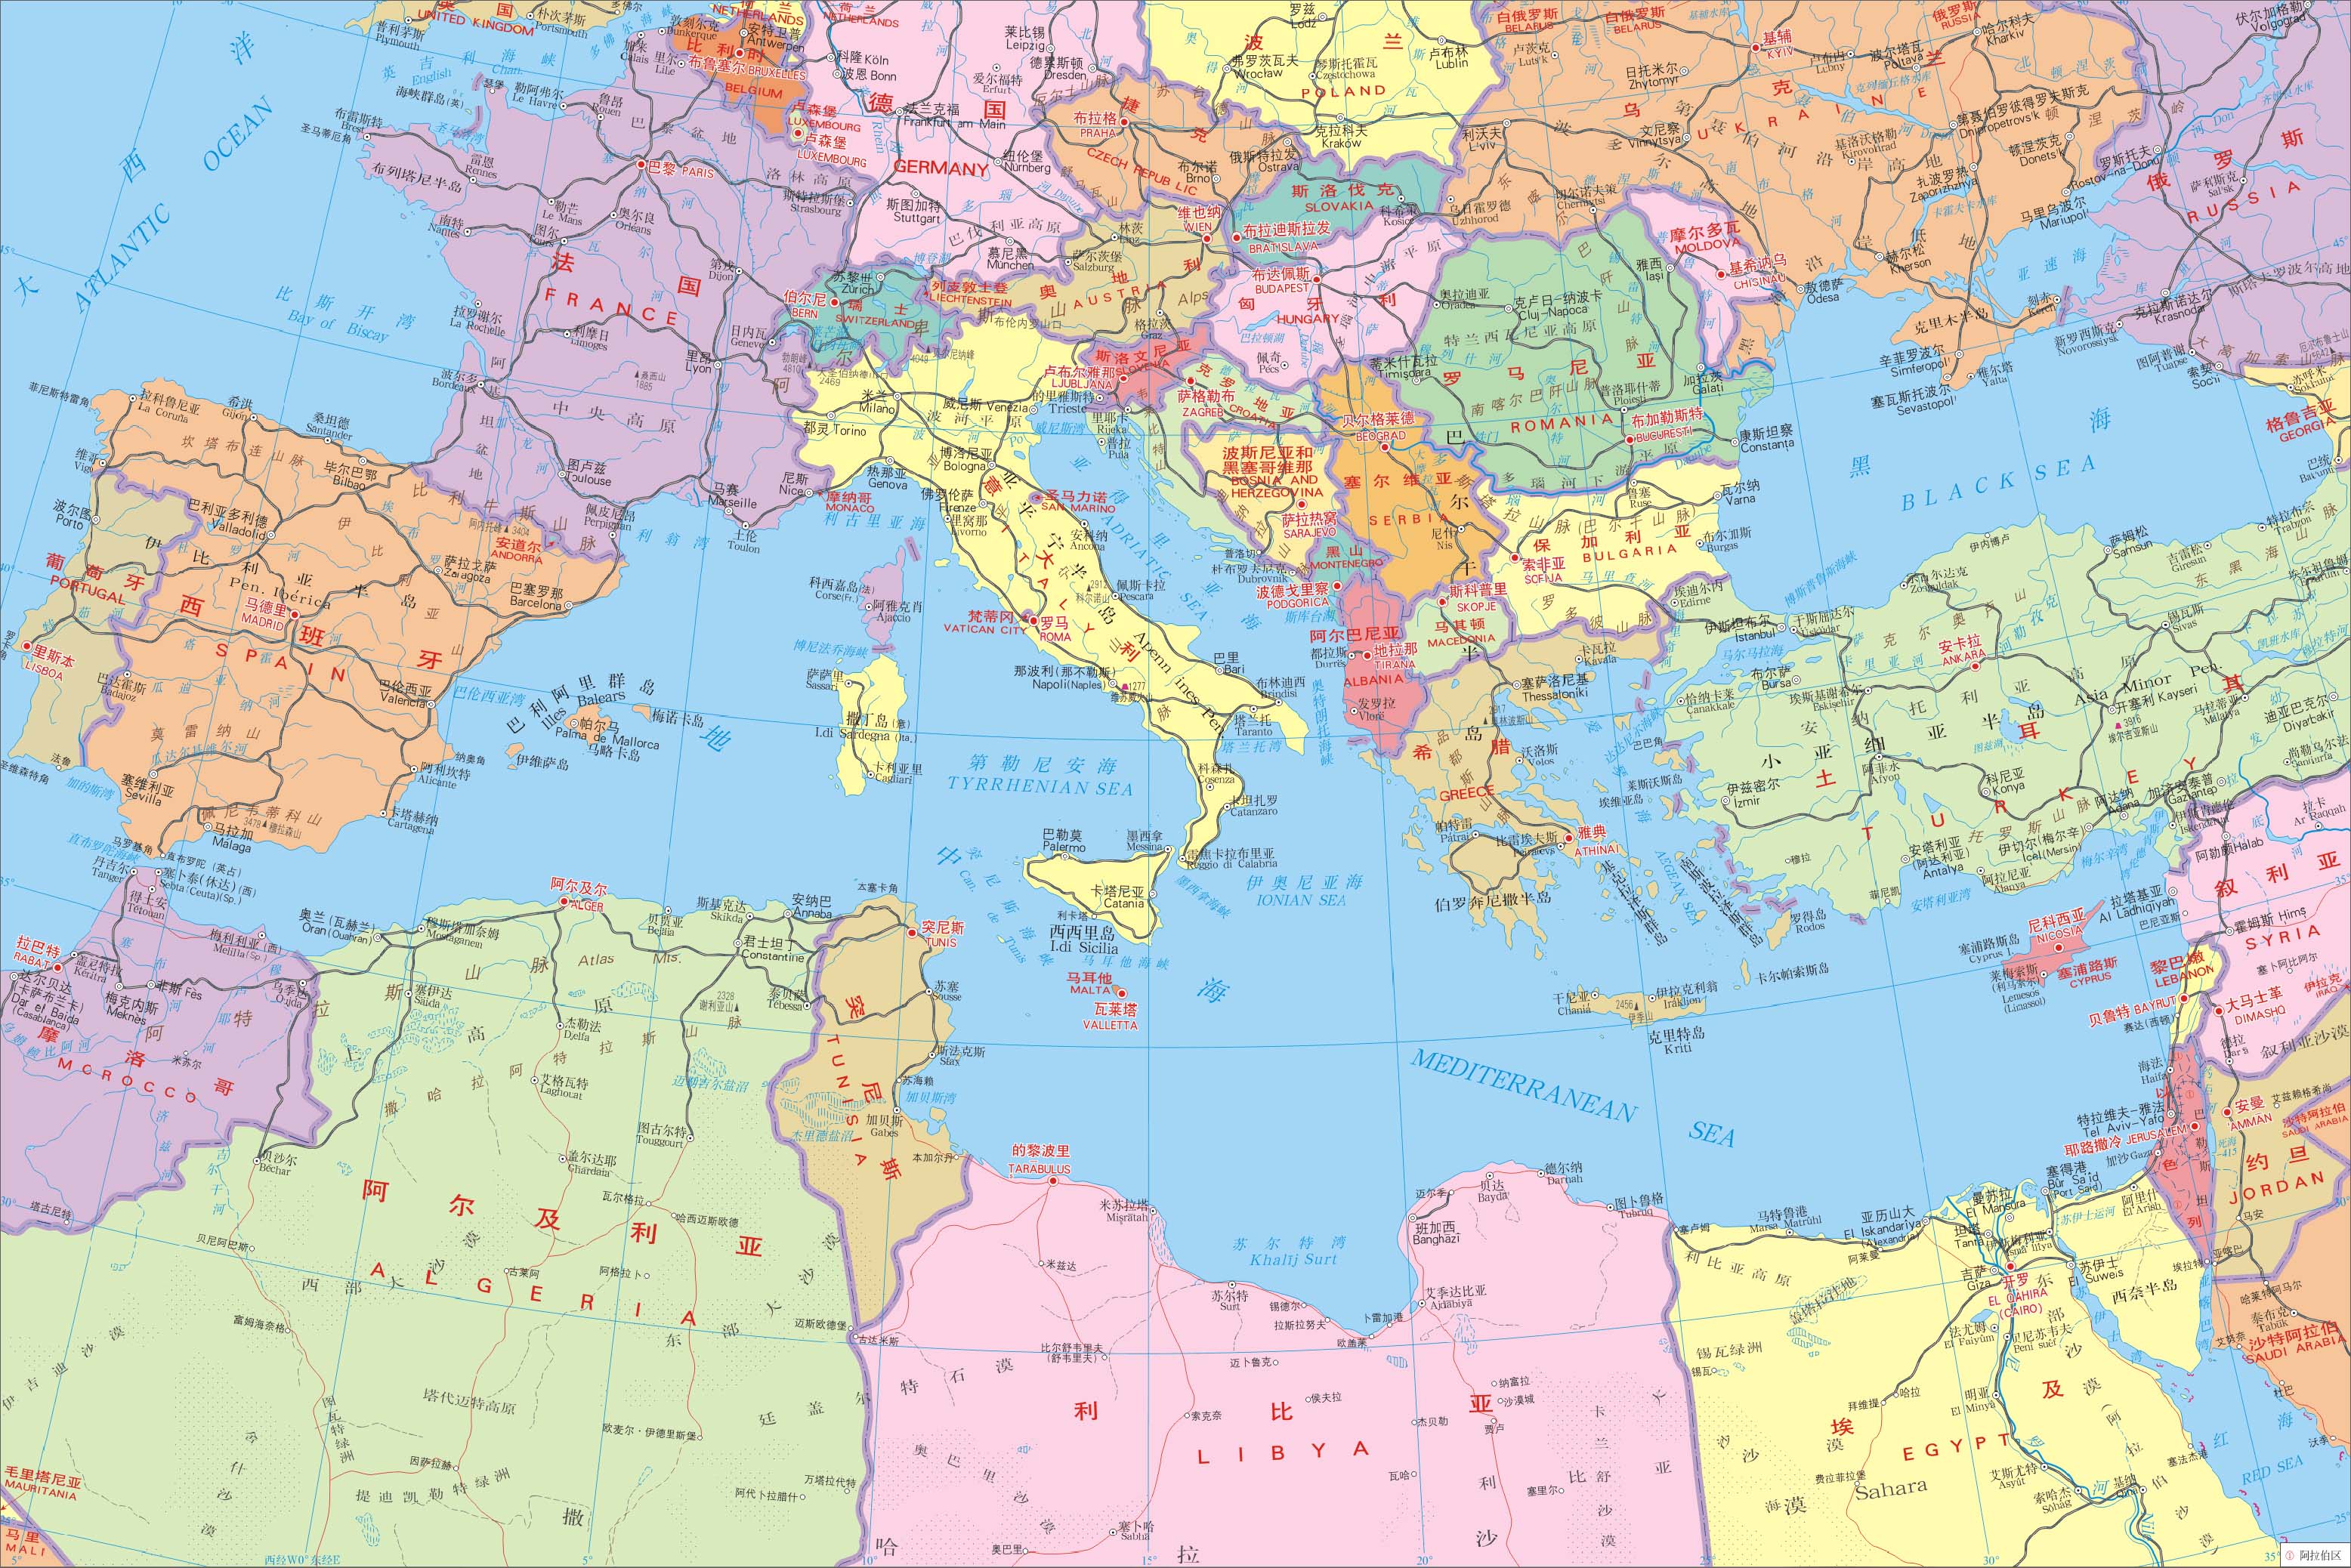 地中海沿岸国家,欧洲有西班牙,英属直布罗陀,法国,摩纳哥,意大利,岛国